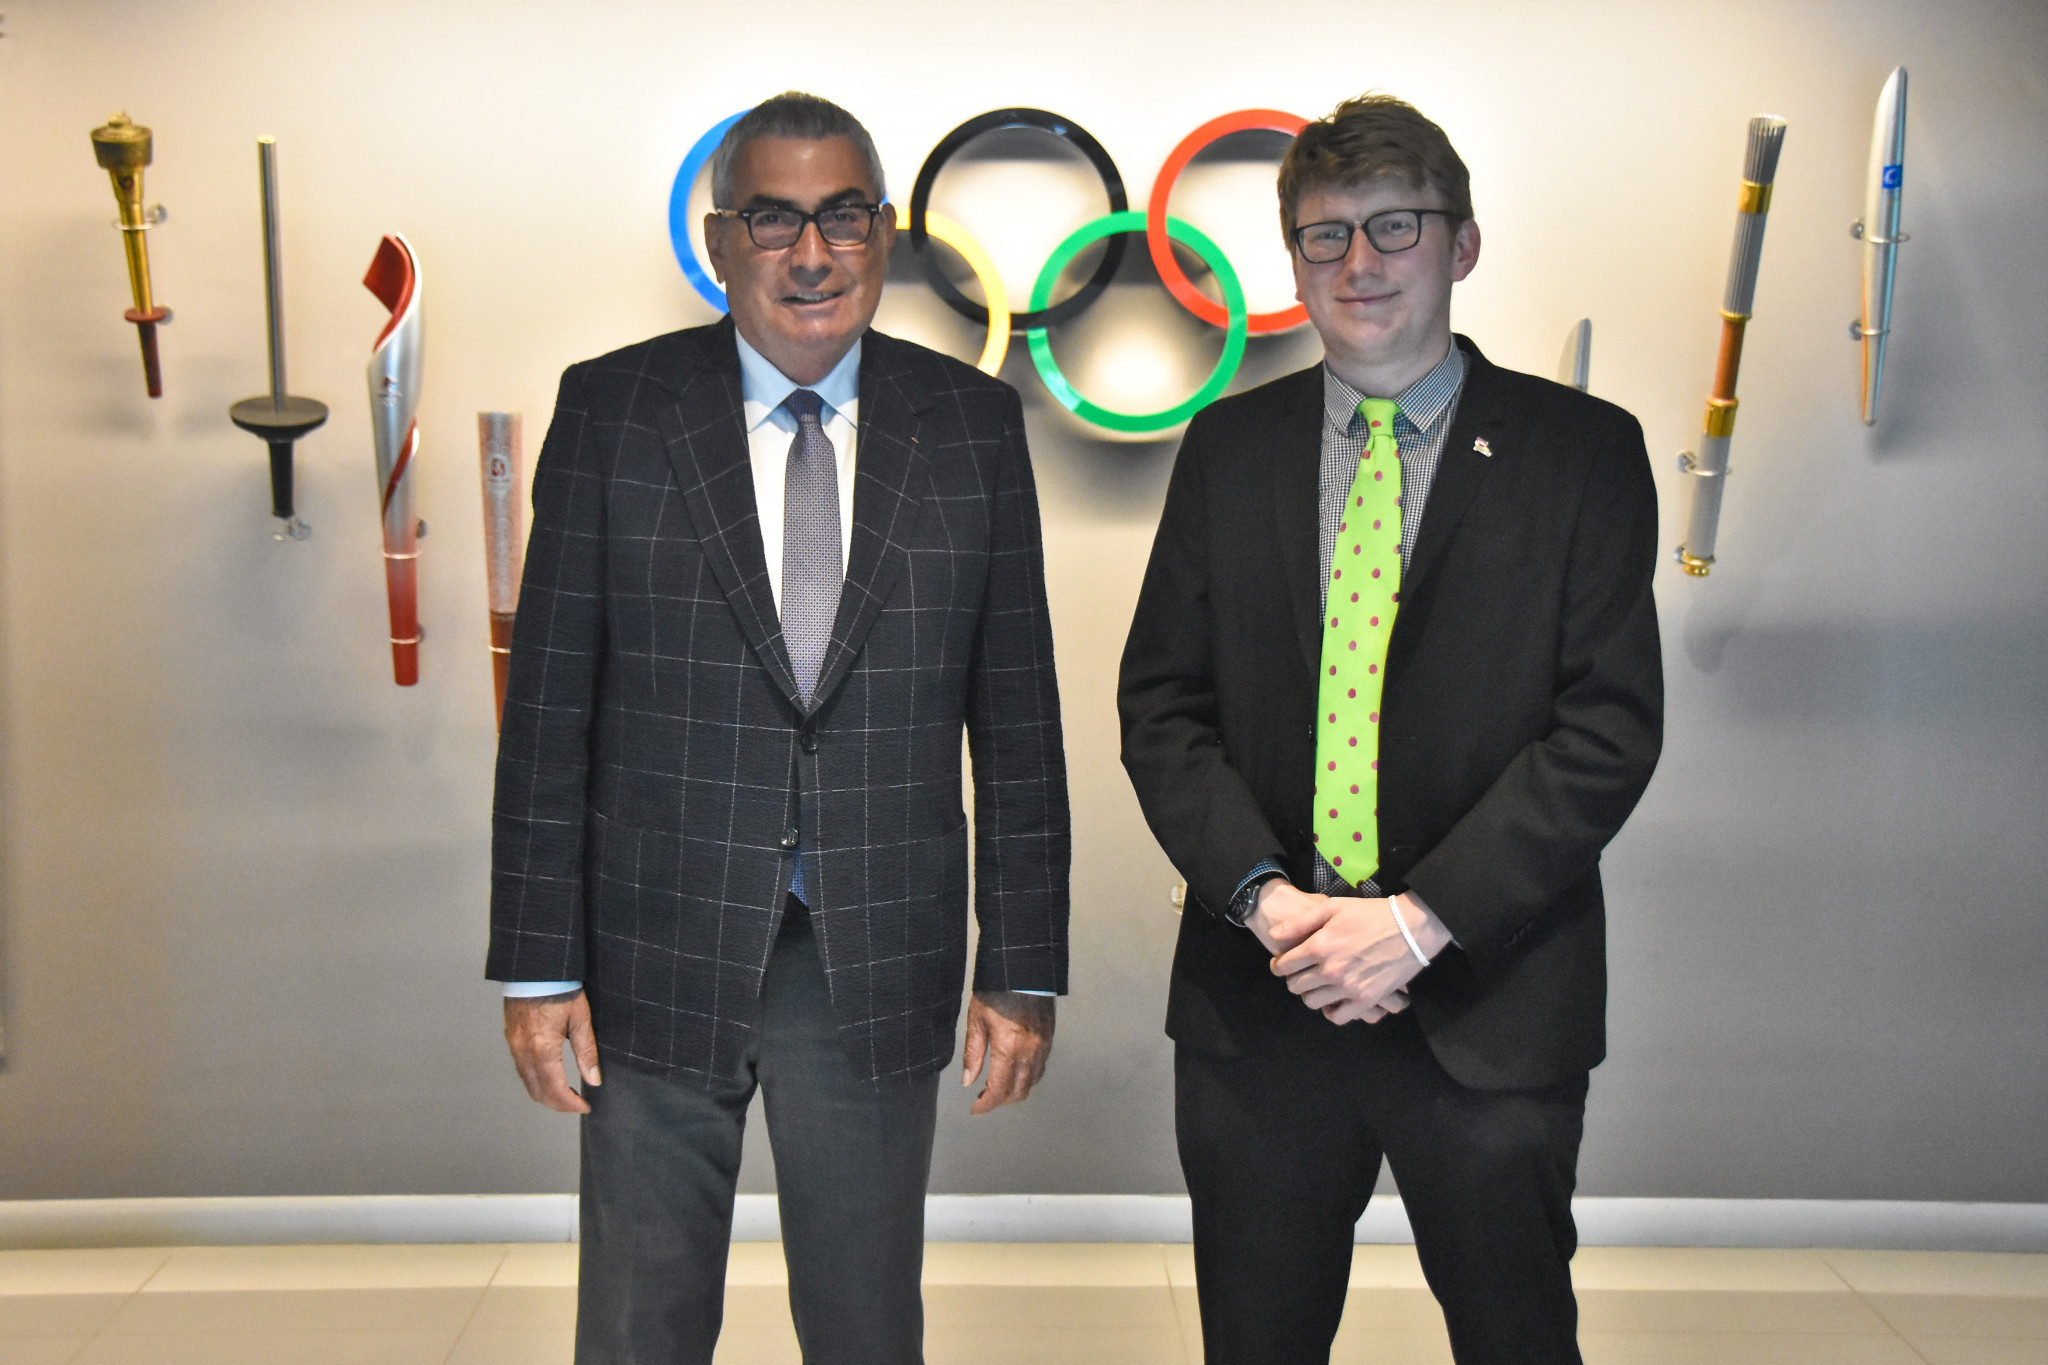 insidethegames senior reporter Geoff Berkeley speaks to Erdener during his visit to Olympic House in Istanbul ©TMOK